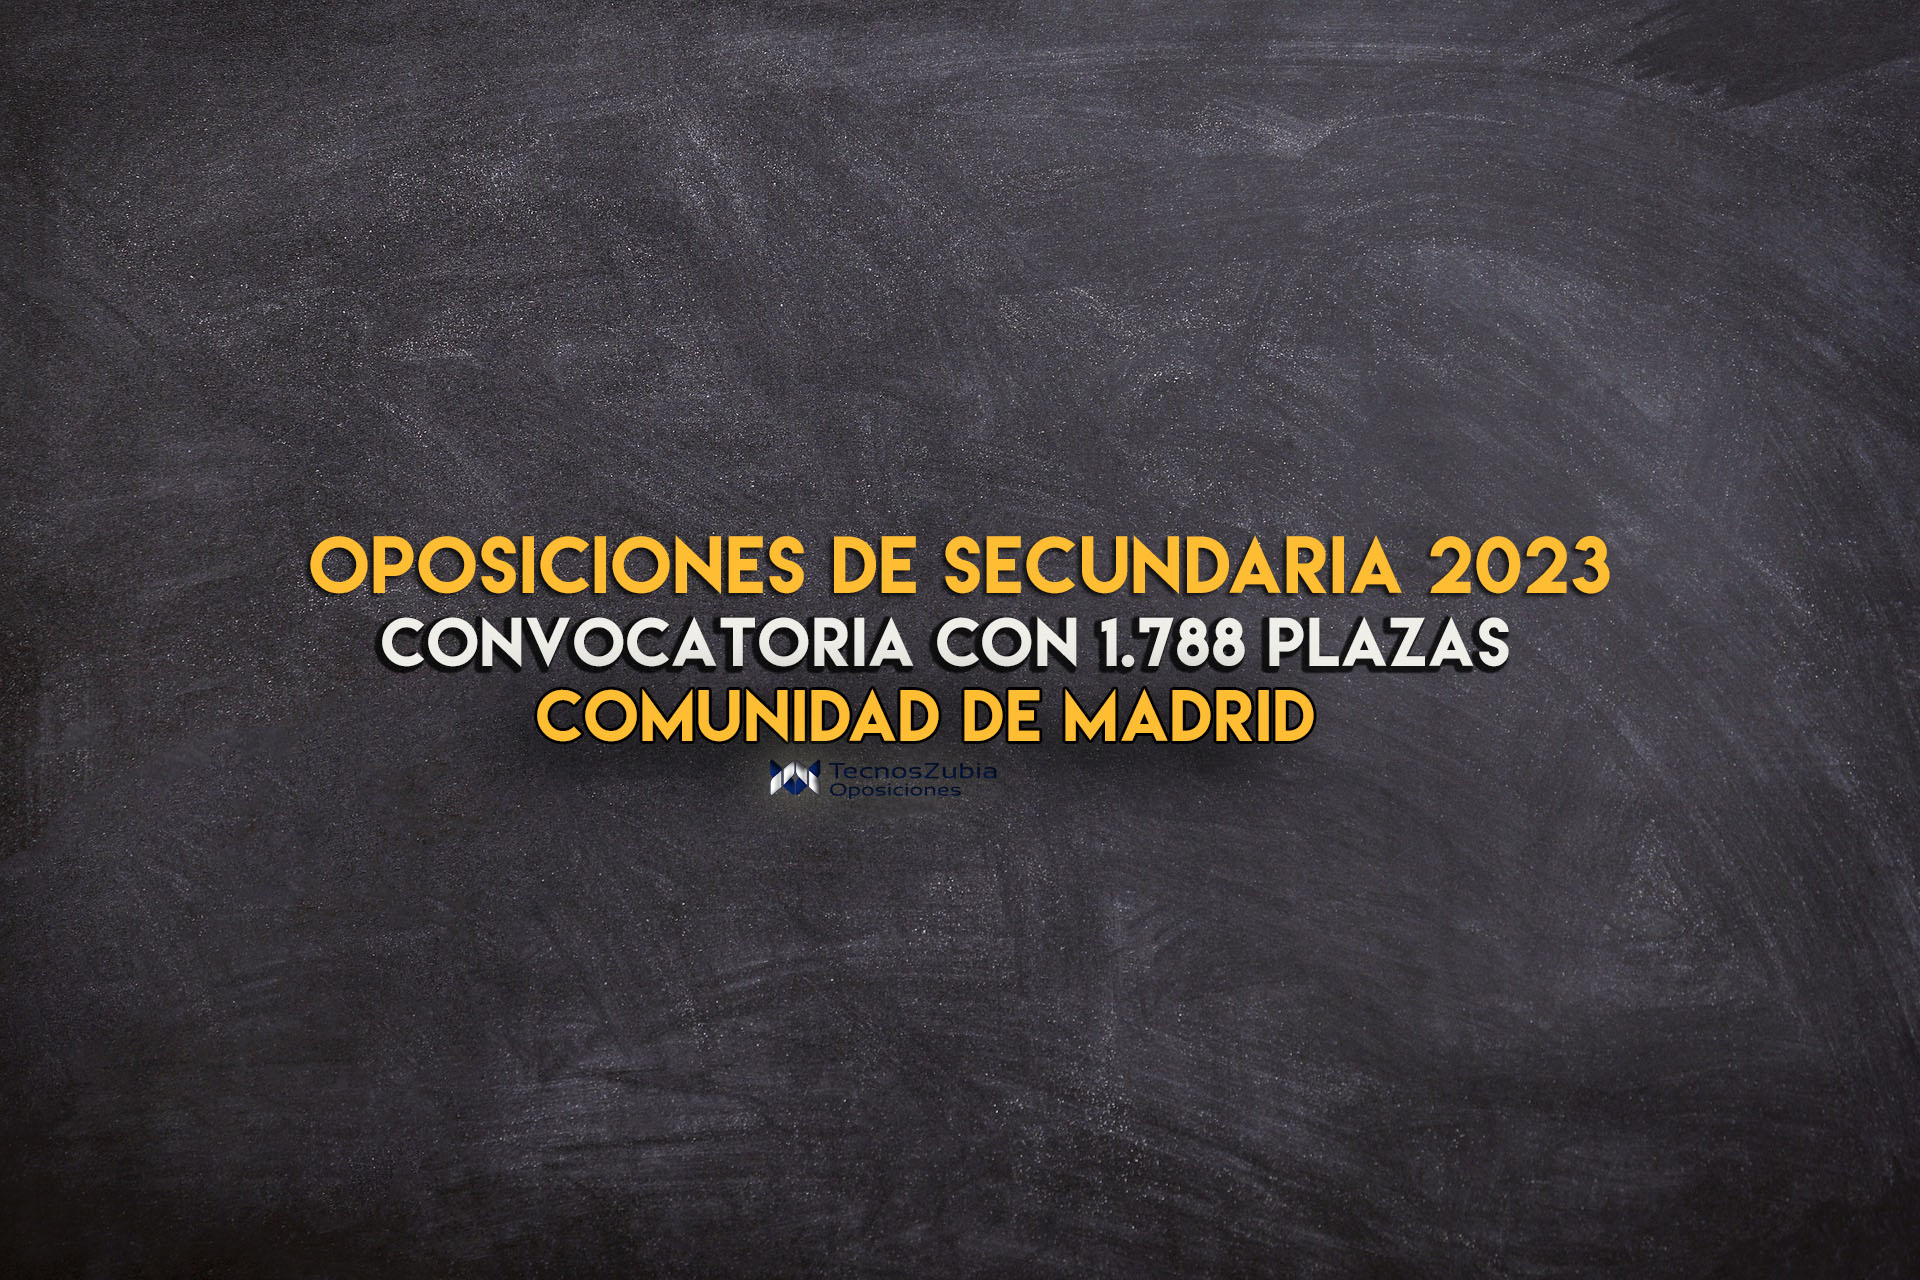 Oposiciones secundaria 2023 MADRID